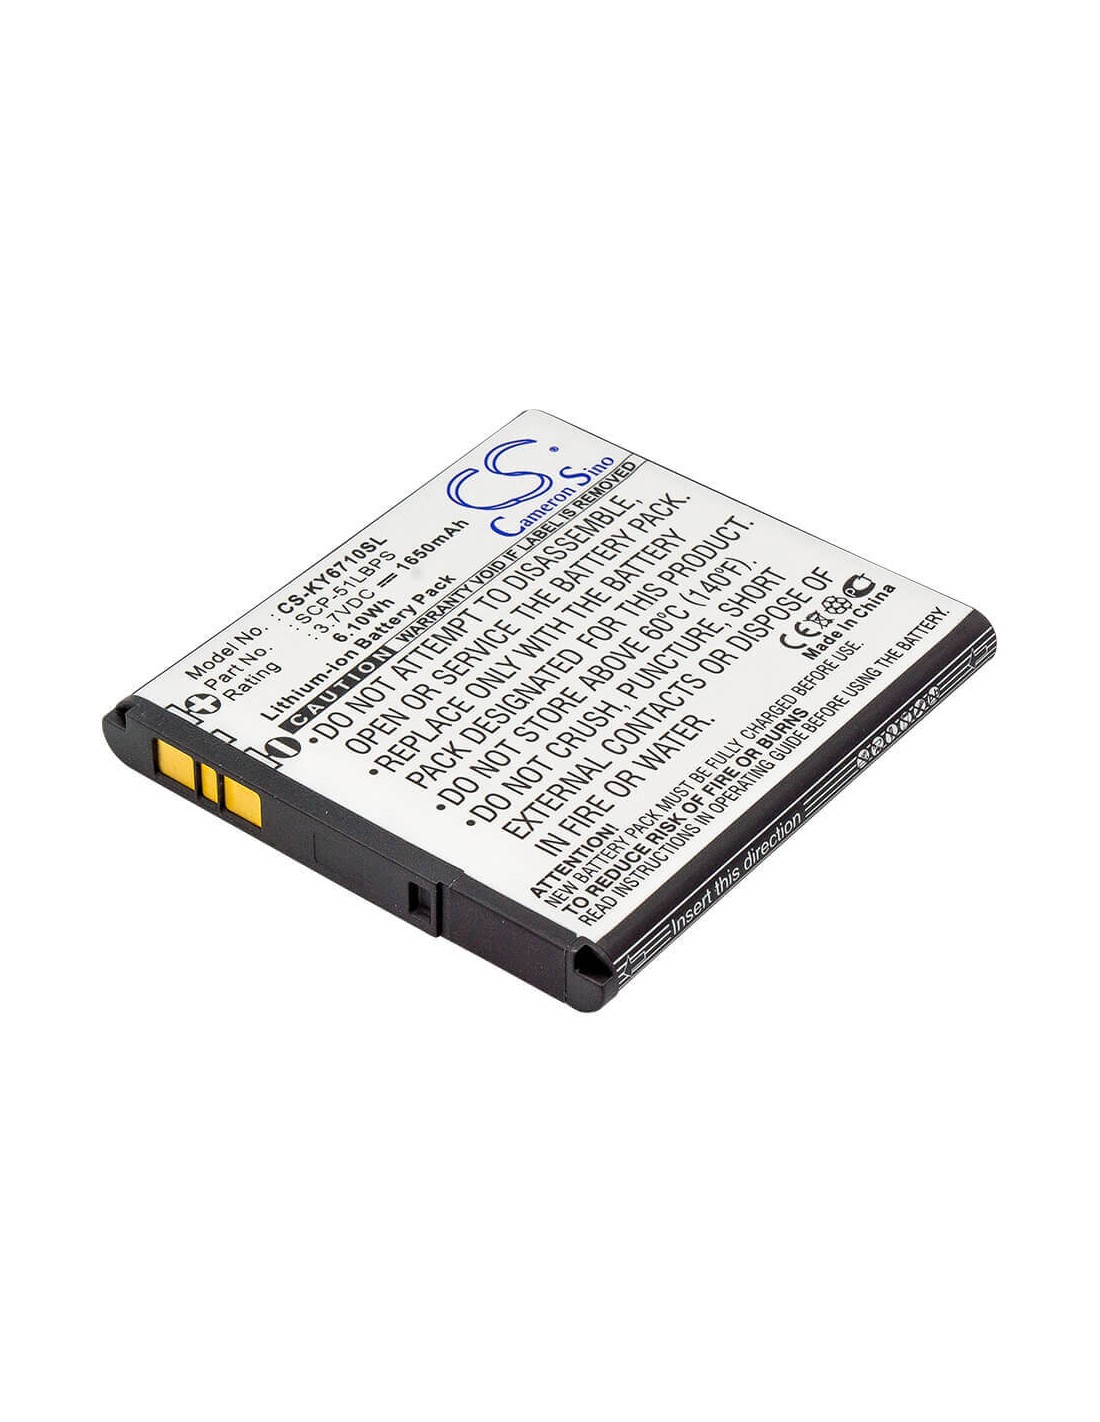 Battery for Kyocera E6710, Torque, E6715 3.7V, 1650mAh - 6.11Wh